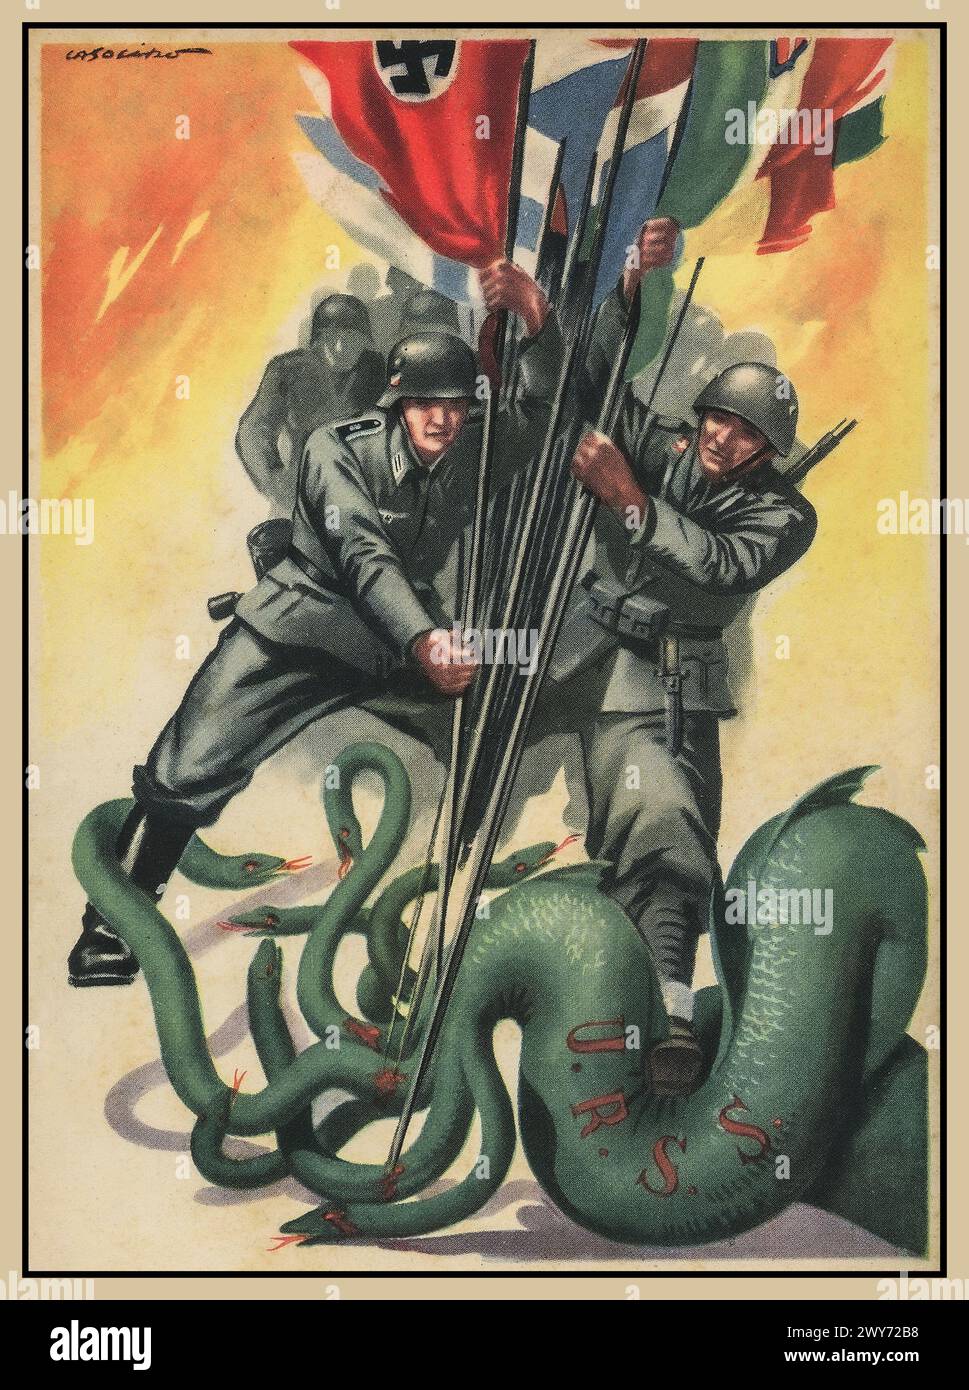 Propagandaplakat der Nazi-/Achsenmächte mit Wehrmacht Nazi-Deutschland und Soldaten der Achsenmächte, die gegen eine grüne Schlange der UdSSR kämpfen, verschiedene Fahnenfahnen der Achsenländer, darunter das Hakenkreuz, halten. 2. Weltkrieg 2. Weltkrieg 1940er Jahre Stockfoto